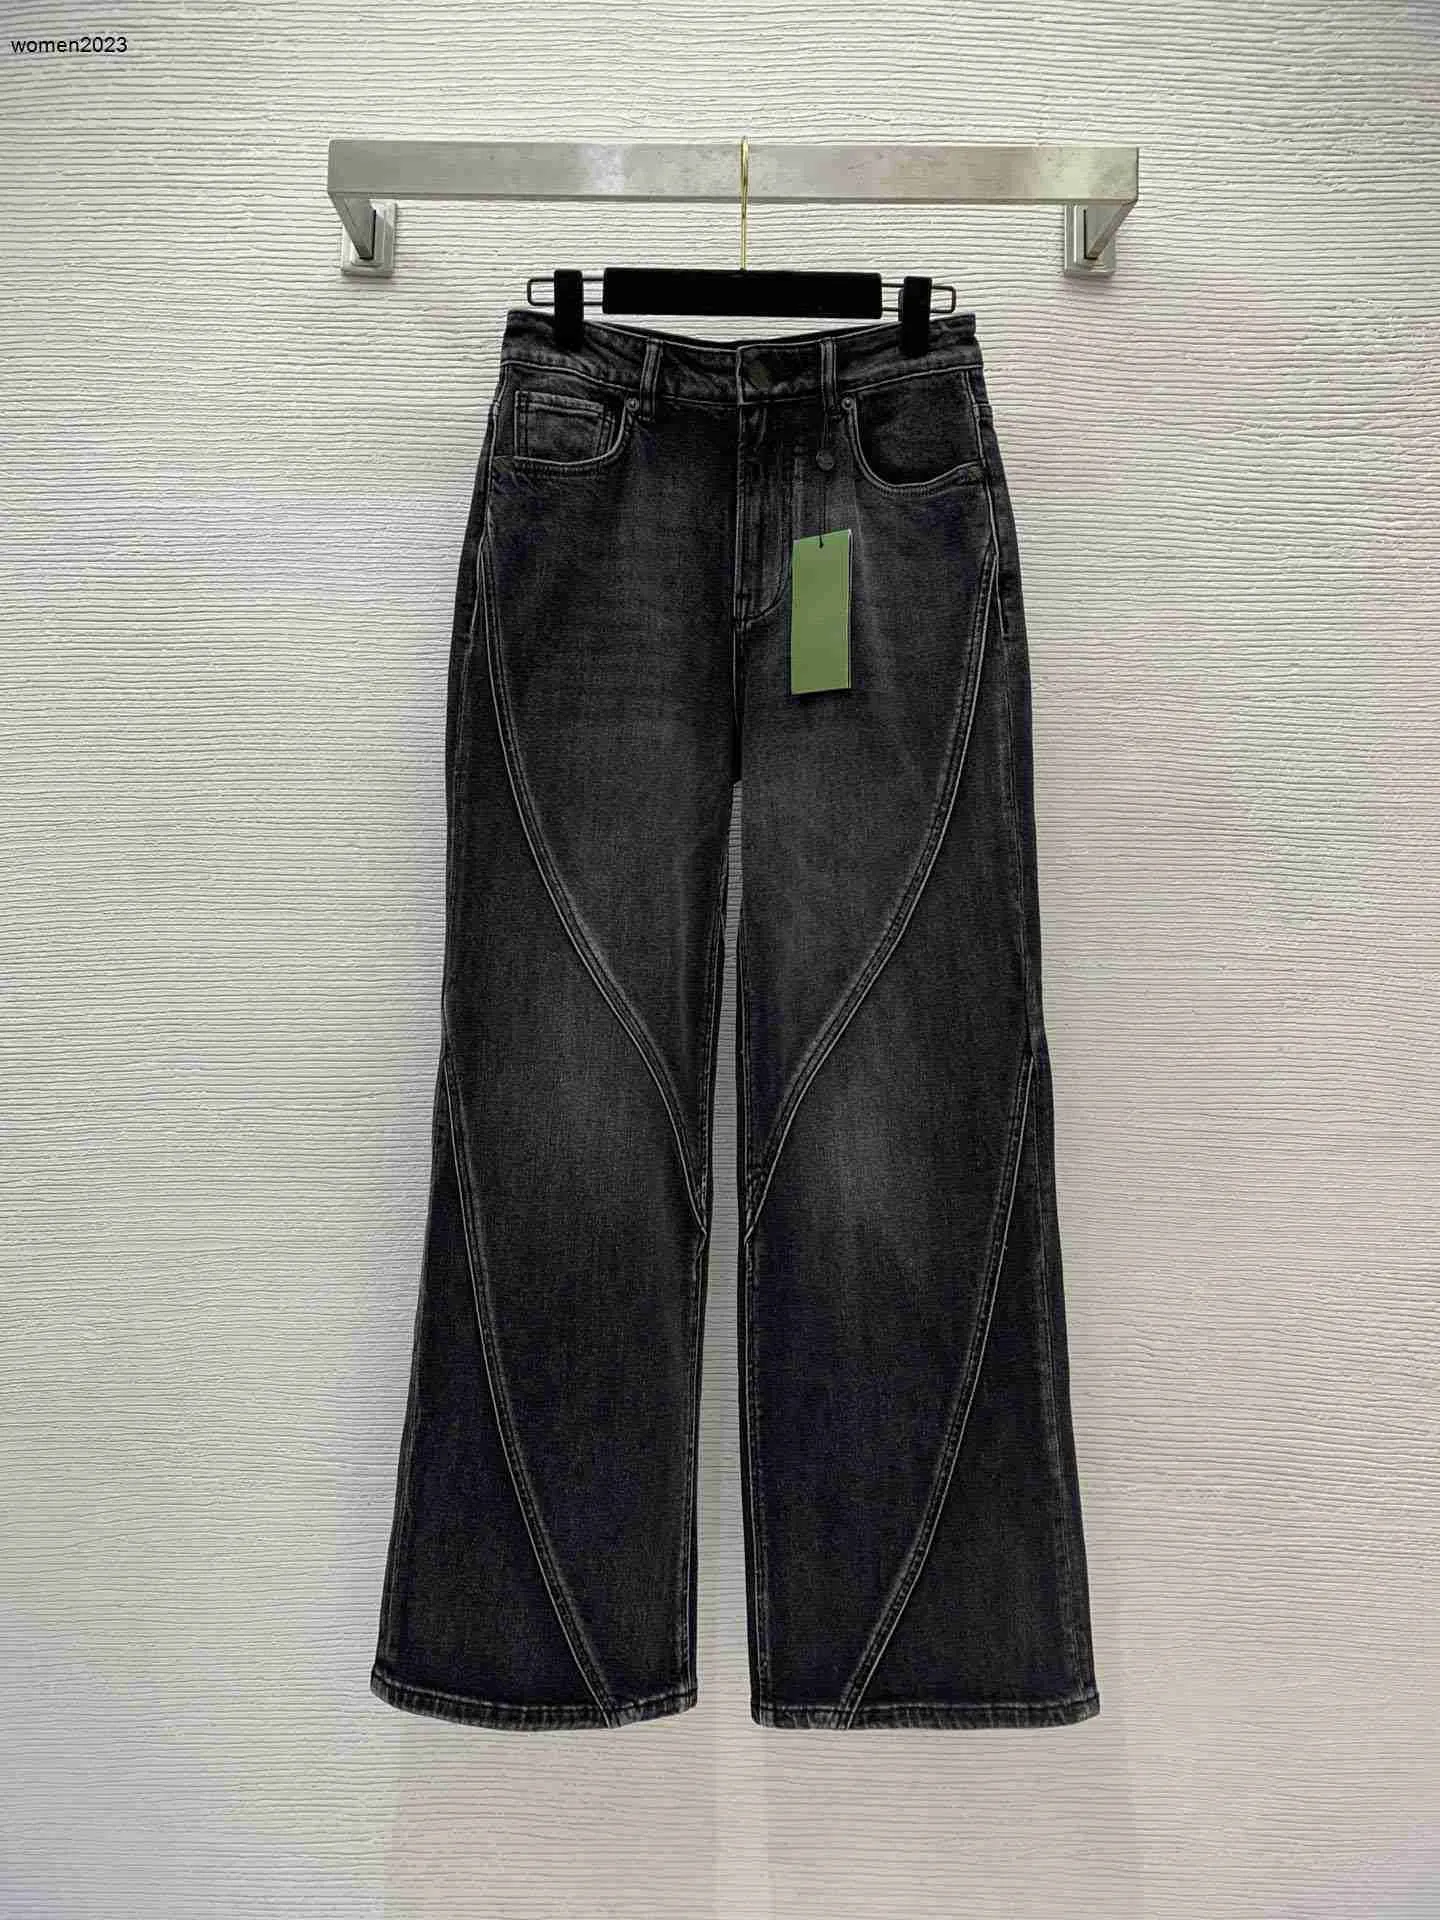 Marka dżinsy kobiety dżinsowe spodnie mody logo dżinsowe spodnie kobiety dżinsy spodnie wysokie talia proste rurka szerokie nogi spodni 28 marca